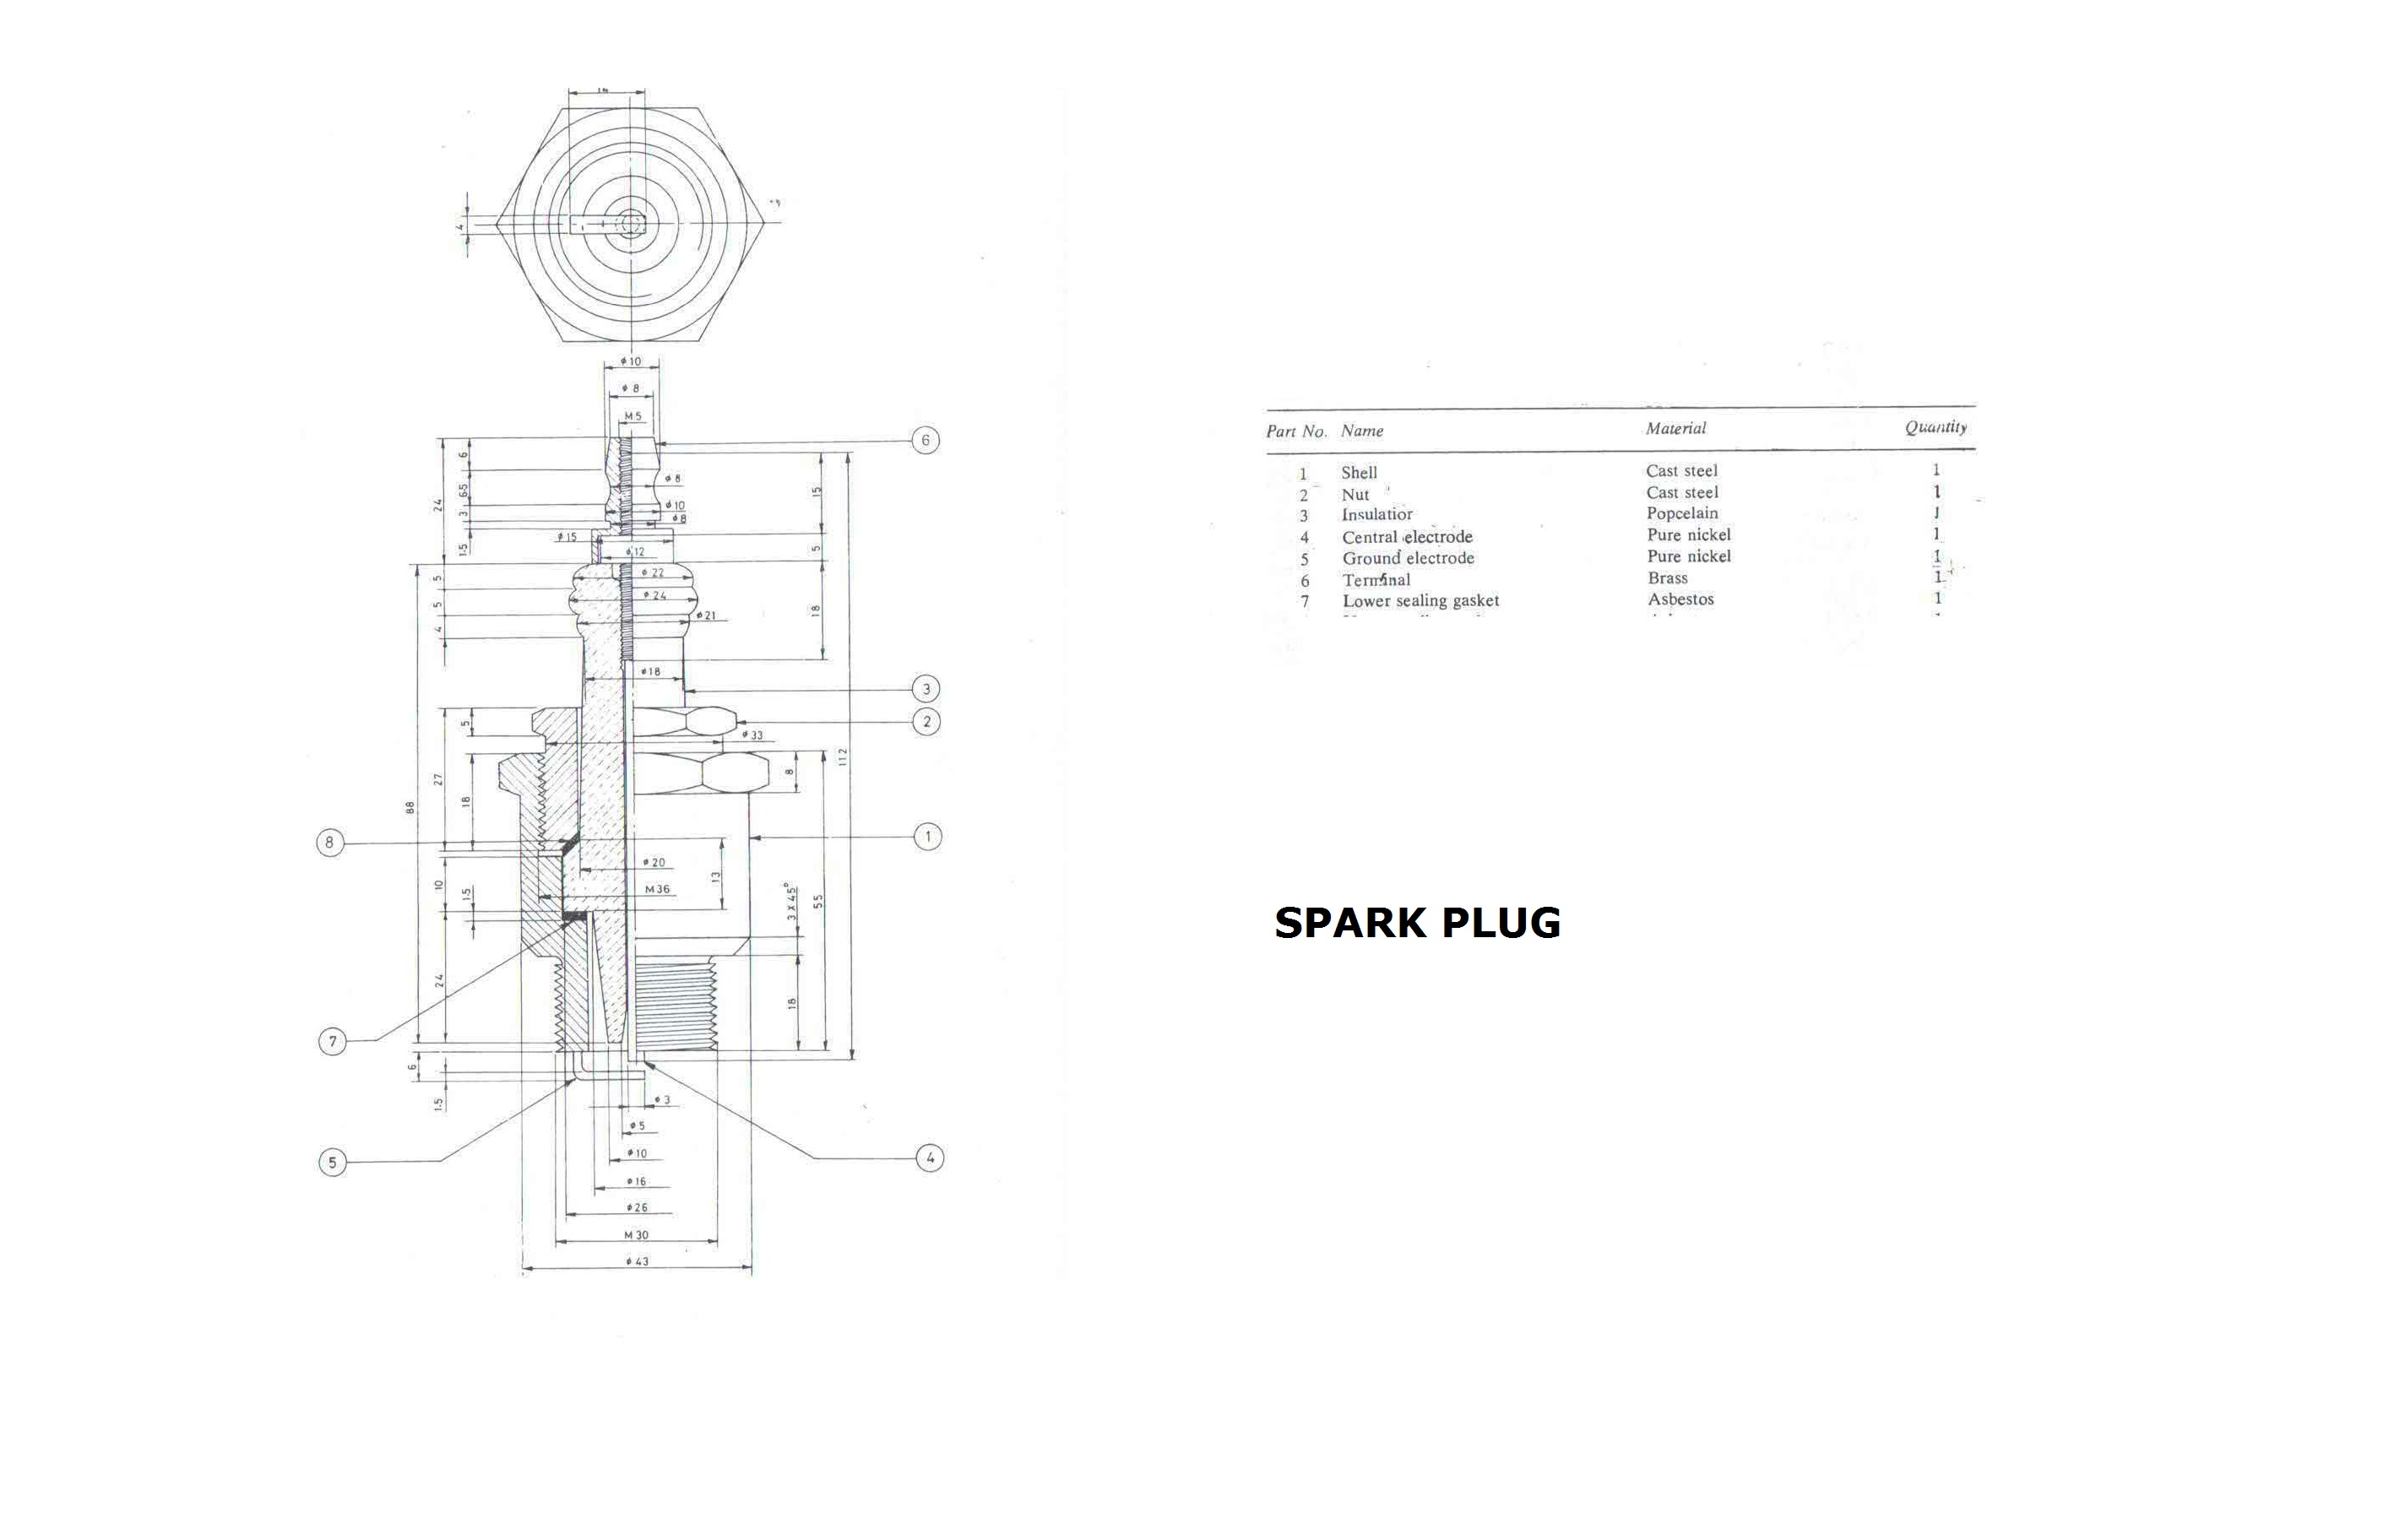 Spark plug design -SPARK PLUG.jpg